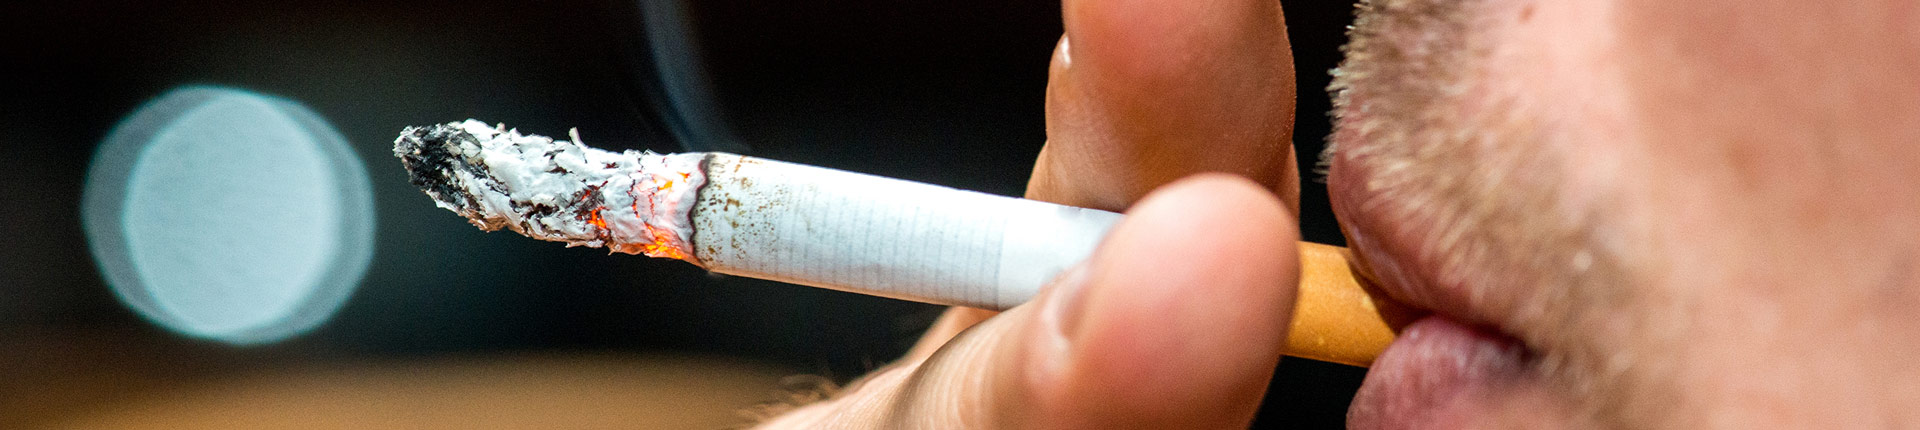 Jak wiele chorób mogą wywołać papierosy? Skutki uboczne palenia tytoniu